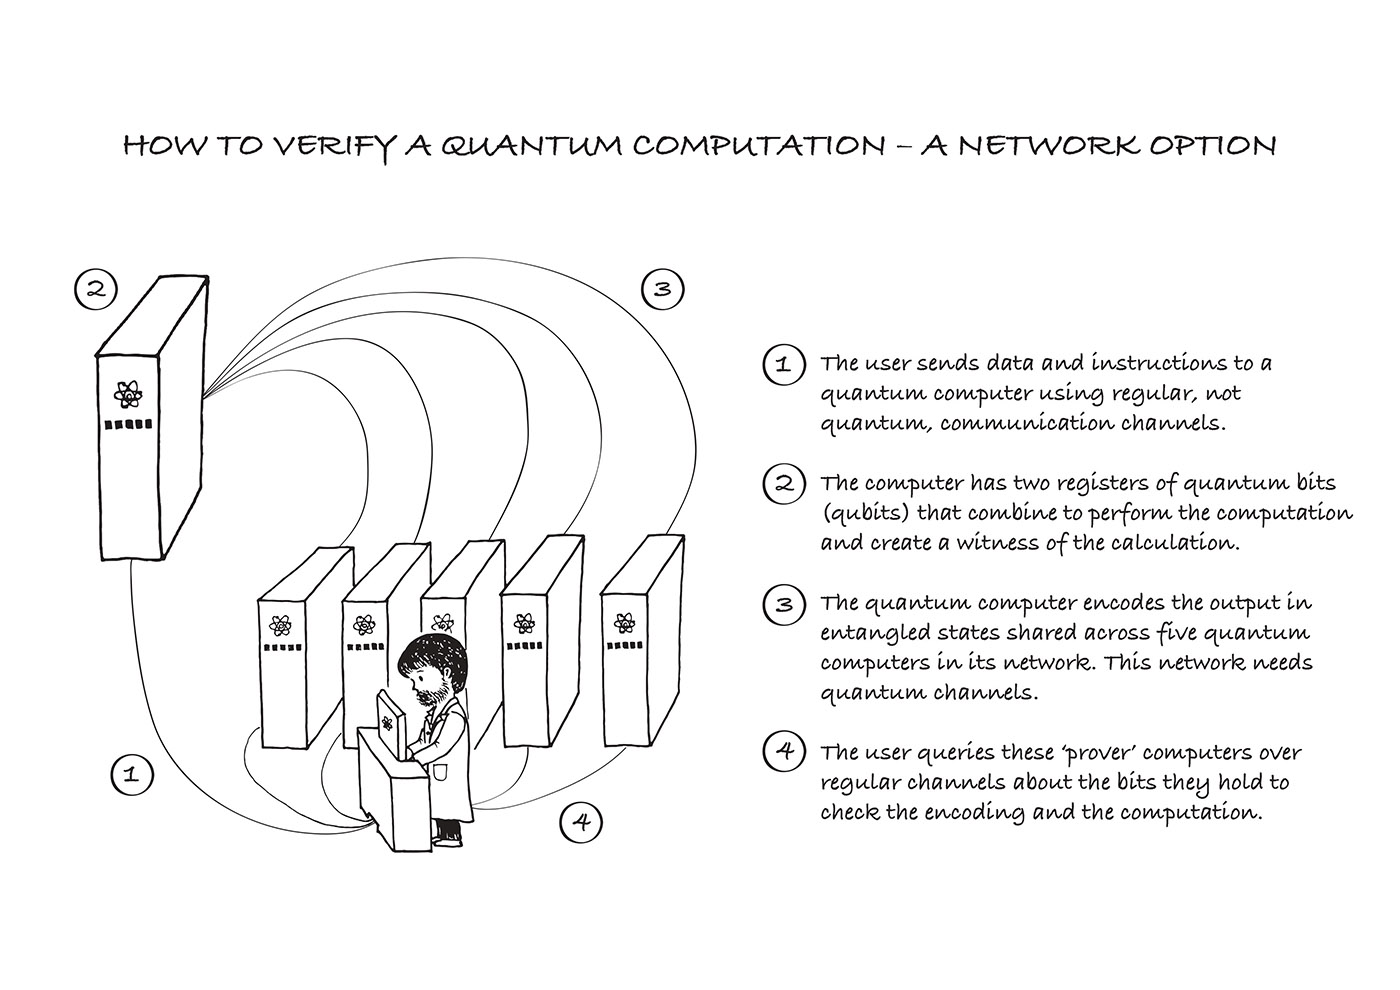 Cartoon illustration of post-hoc quantum verification